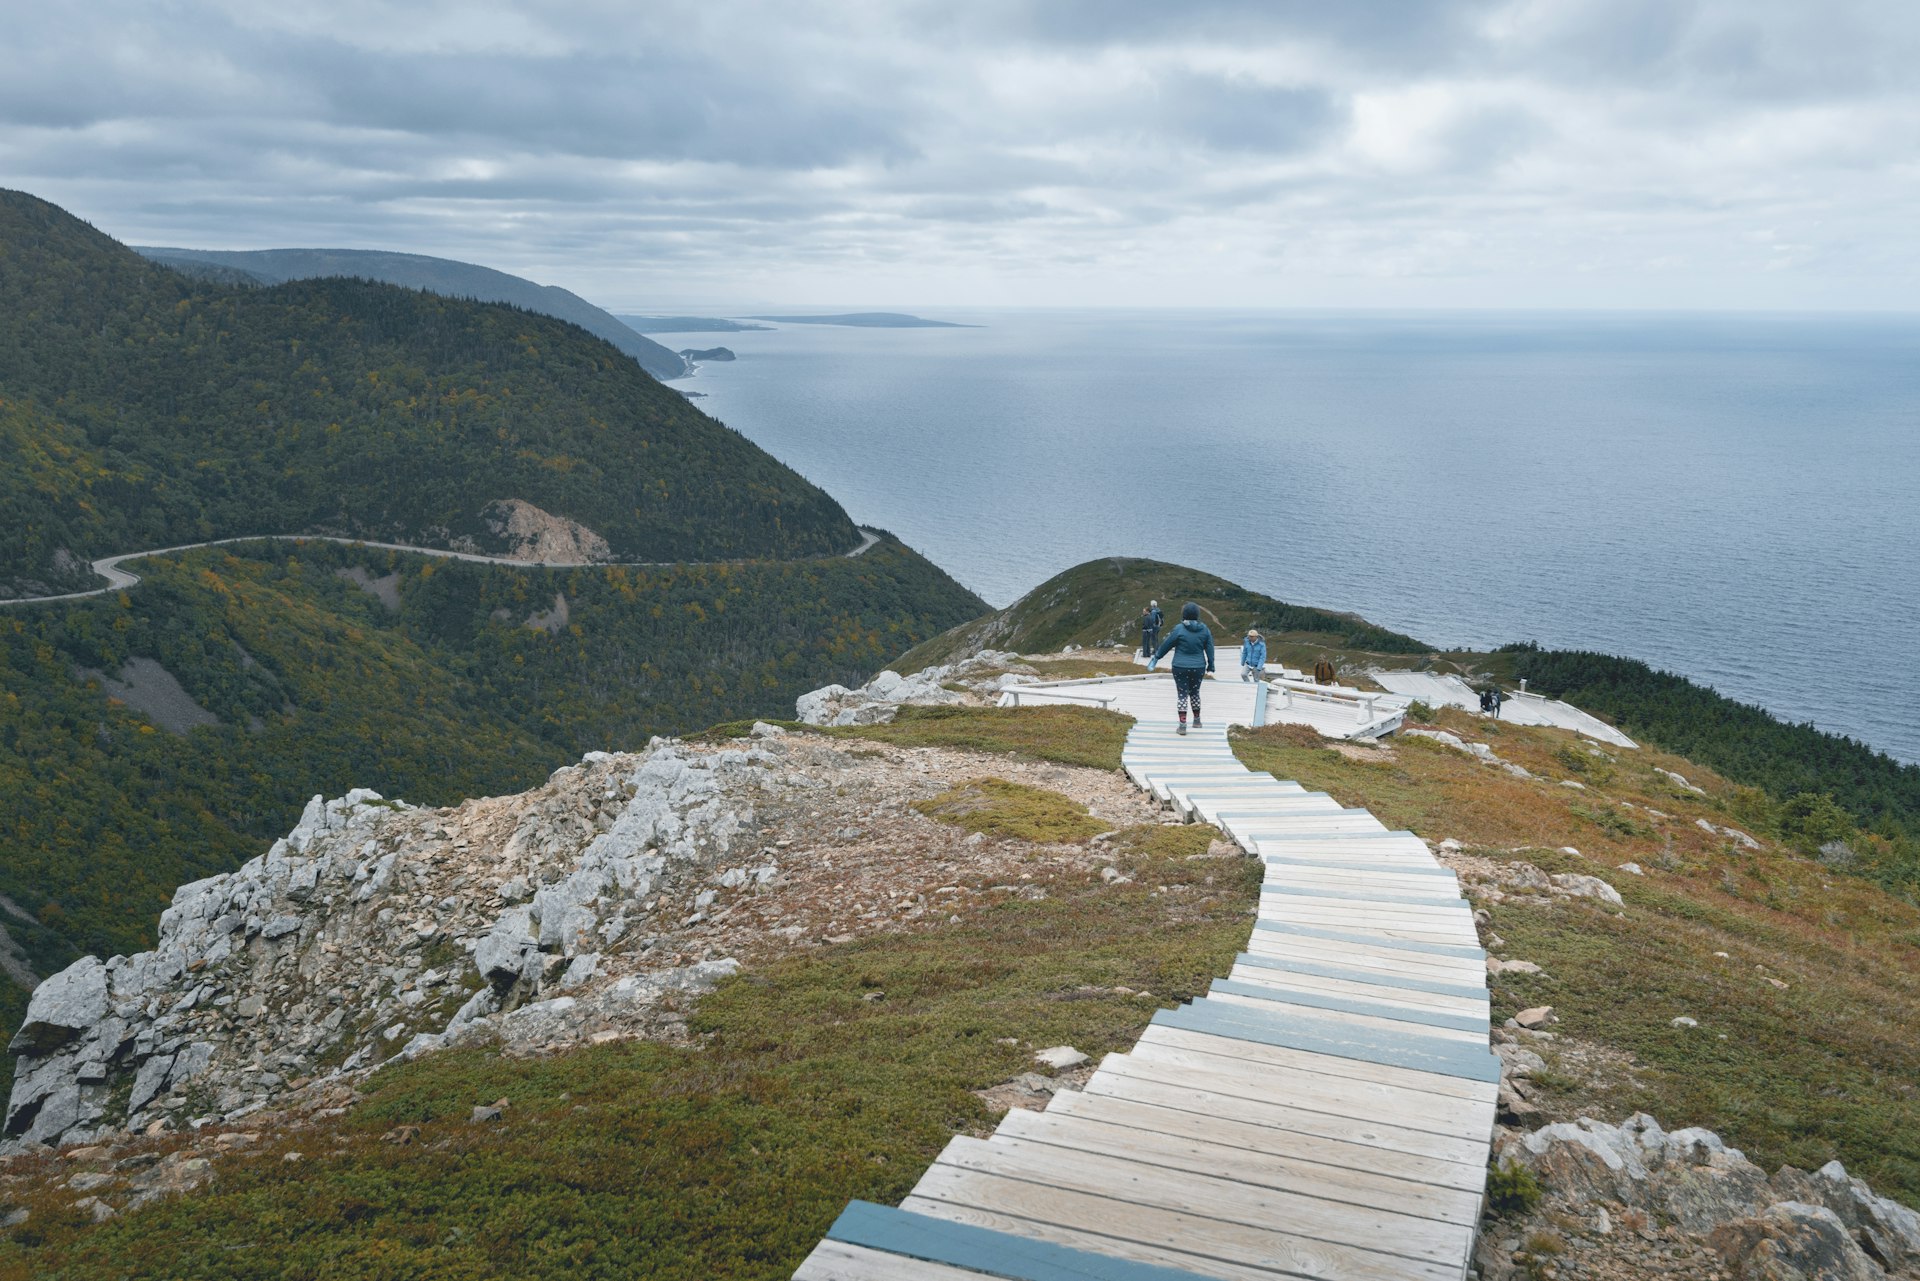 Pessoas andando no calçadão ao longo da Skyline Trail, Parque Nacional Cape Breton Highlands, Nova Escócia, Canadá